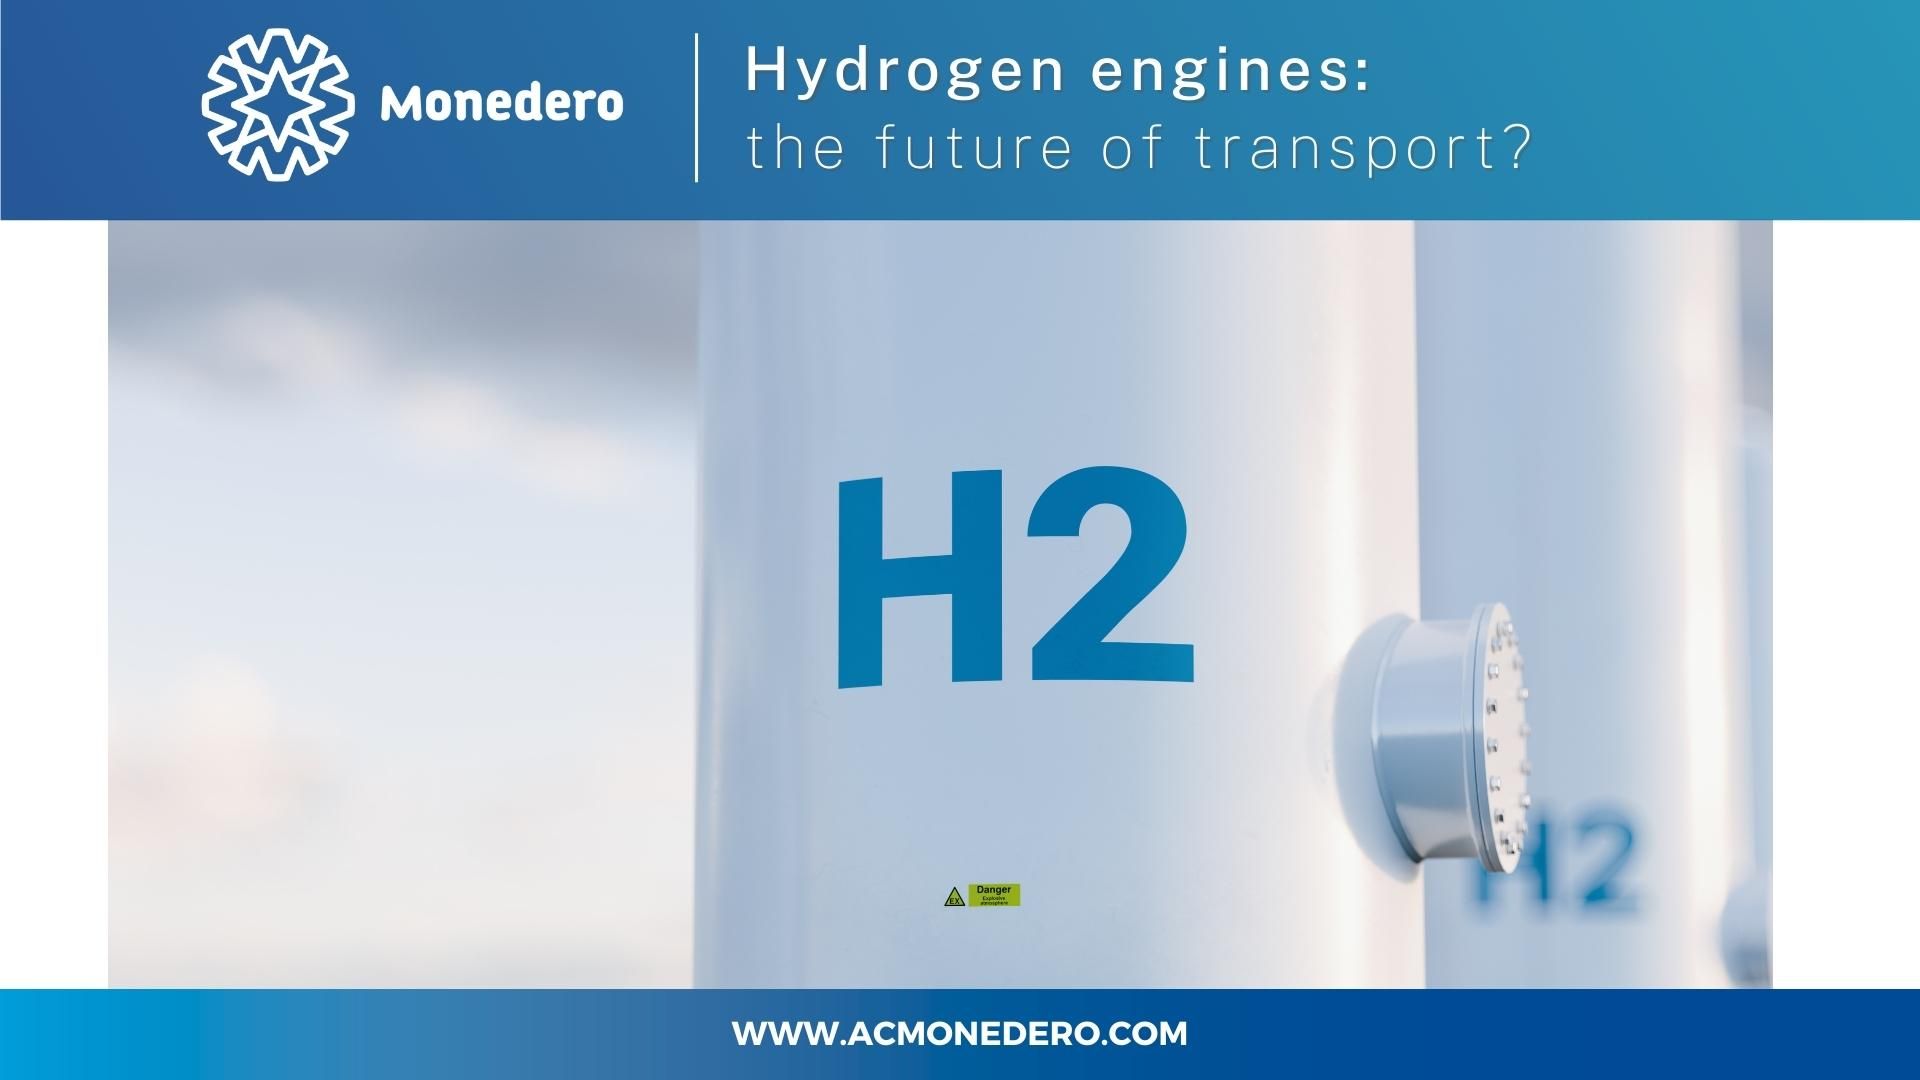 Les moteurs à hydrogène : l'avenir des transports?